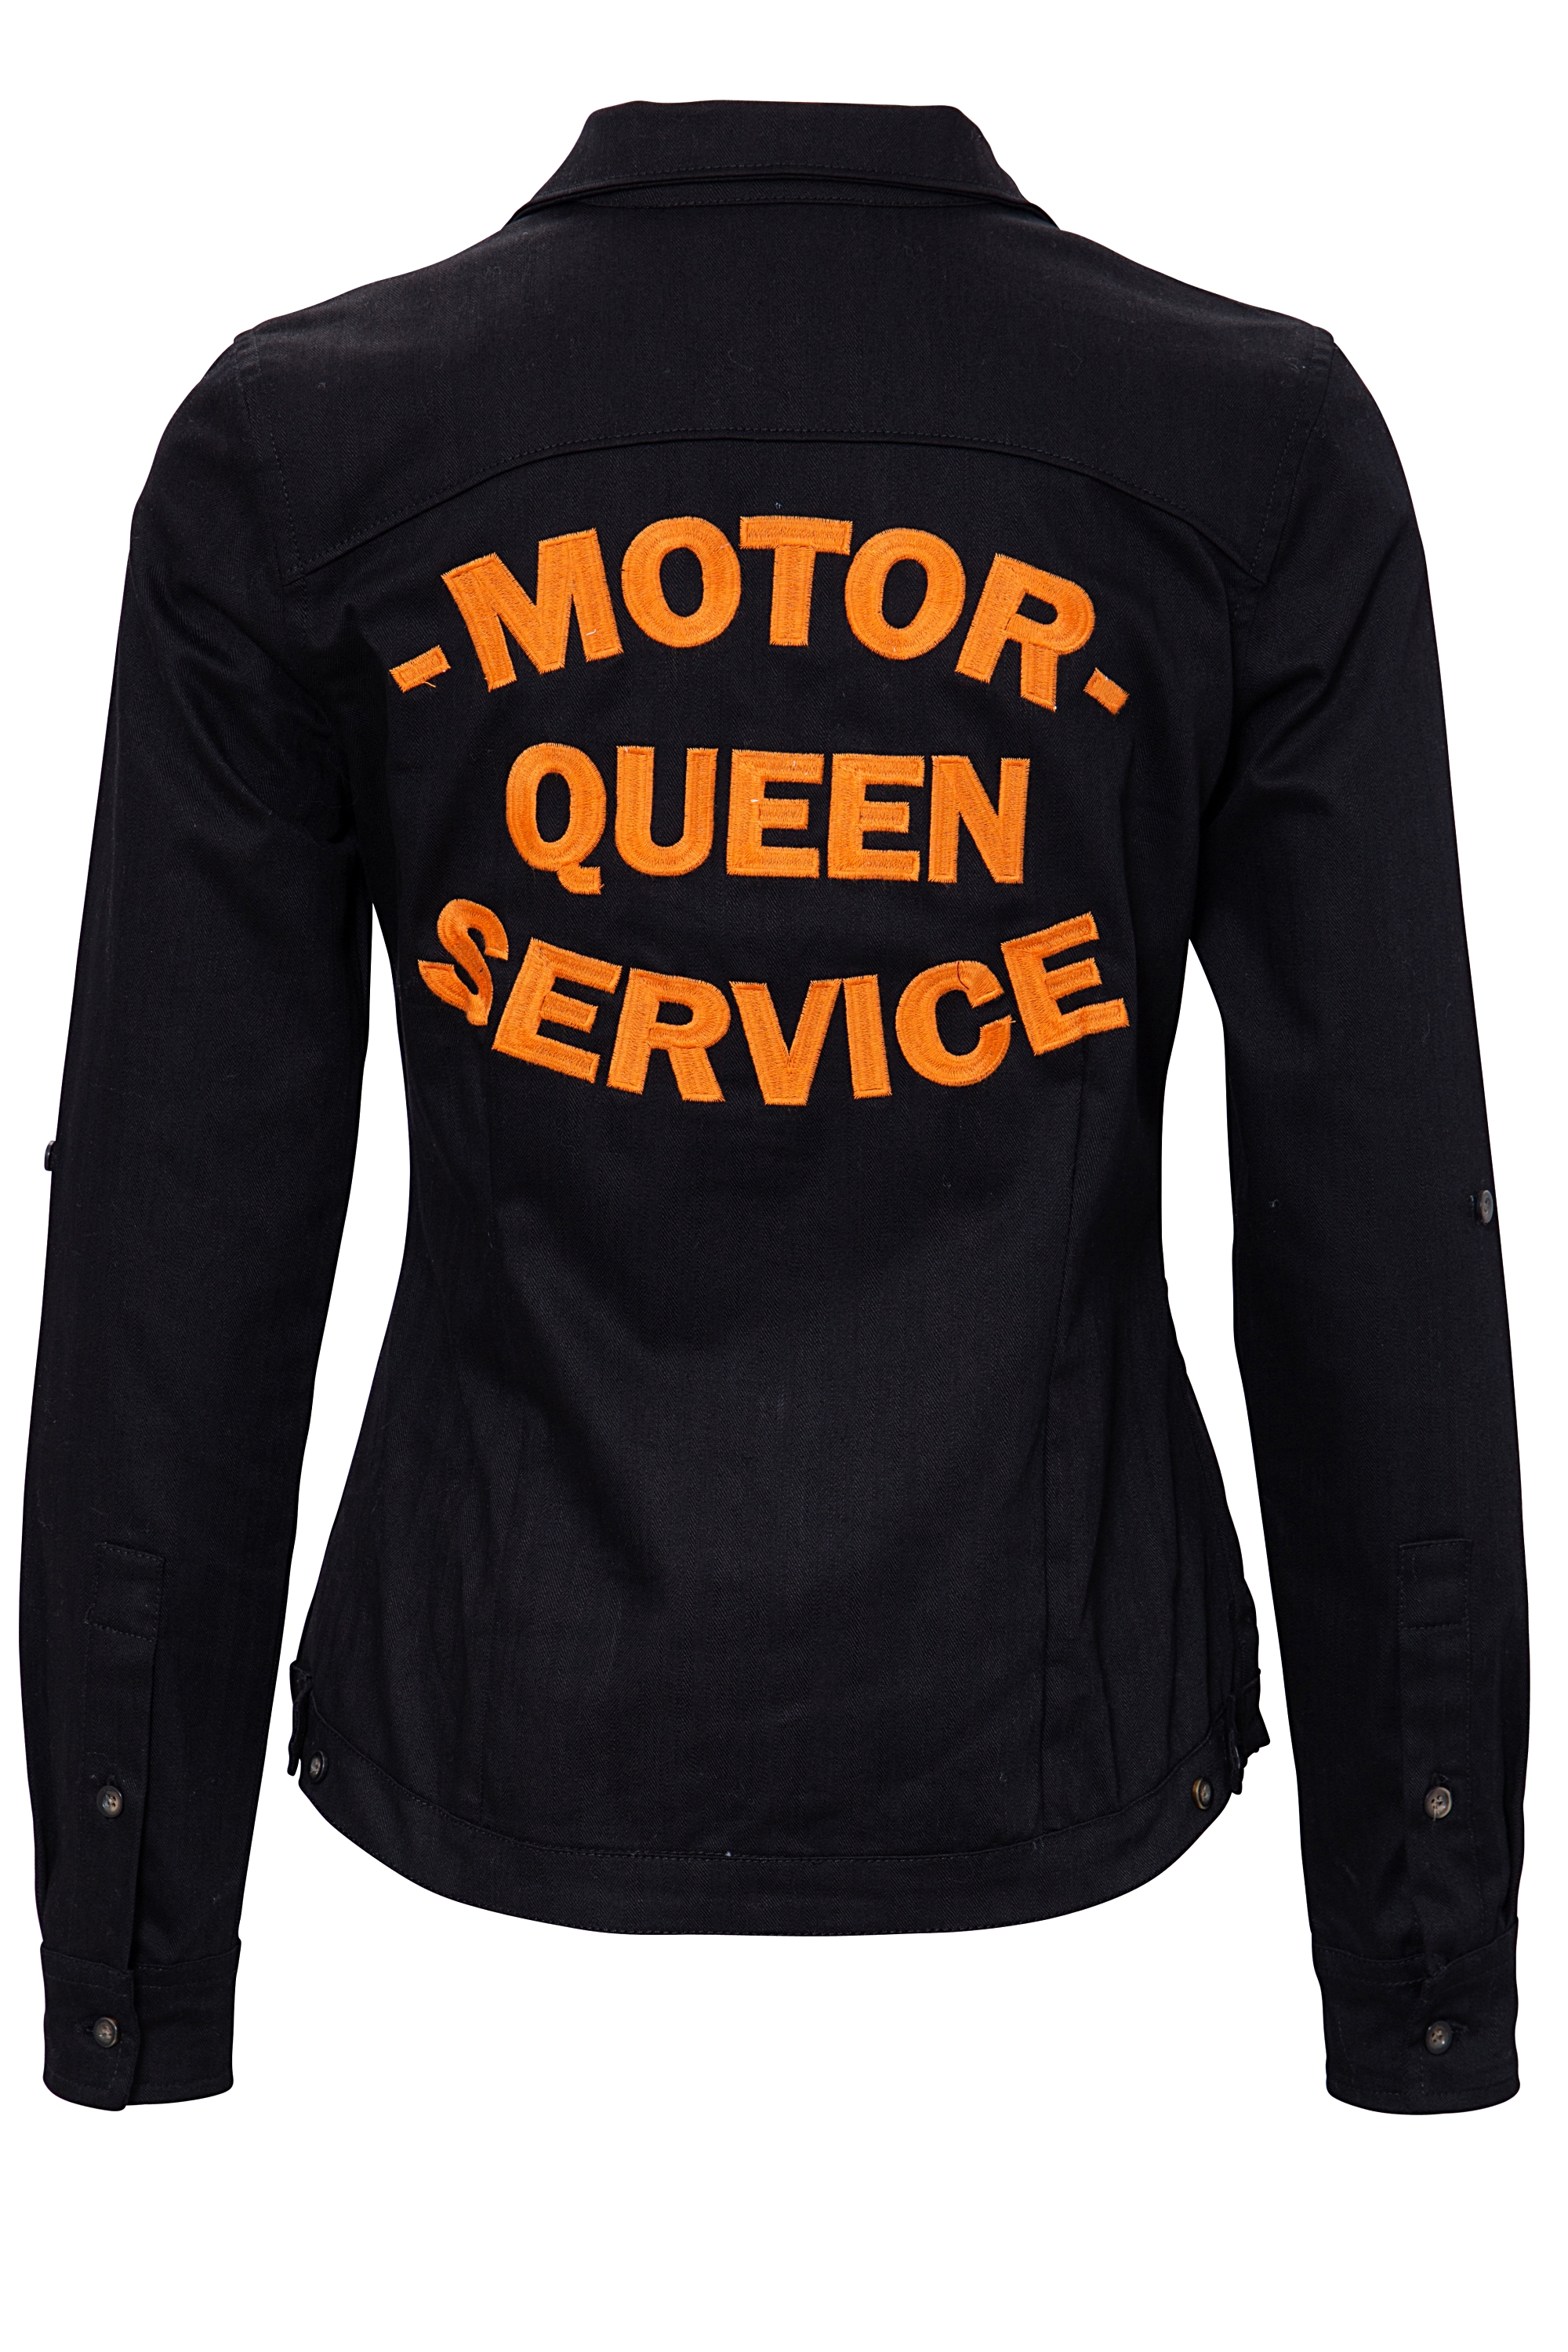 Queen Kerosin Bluse - Motor Queen M